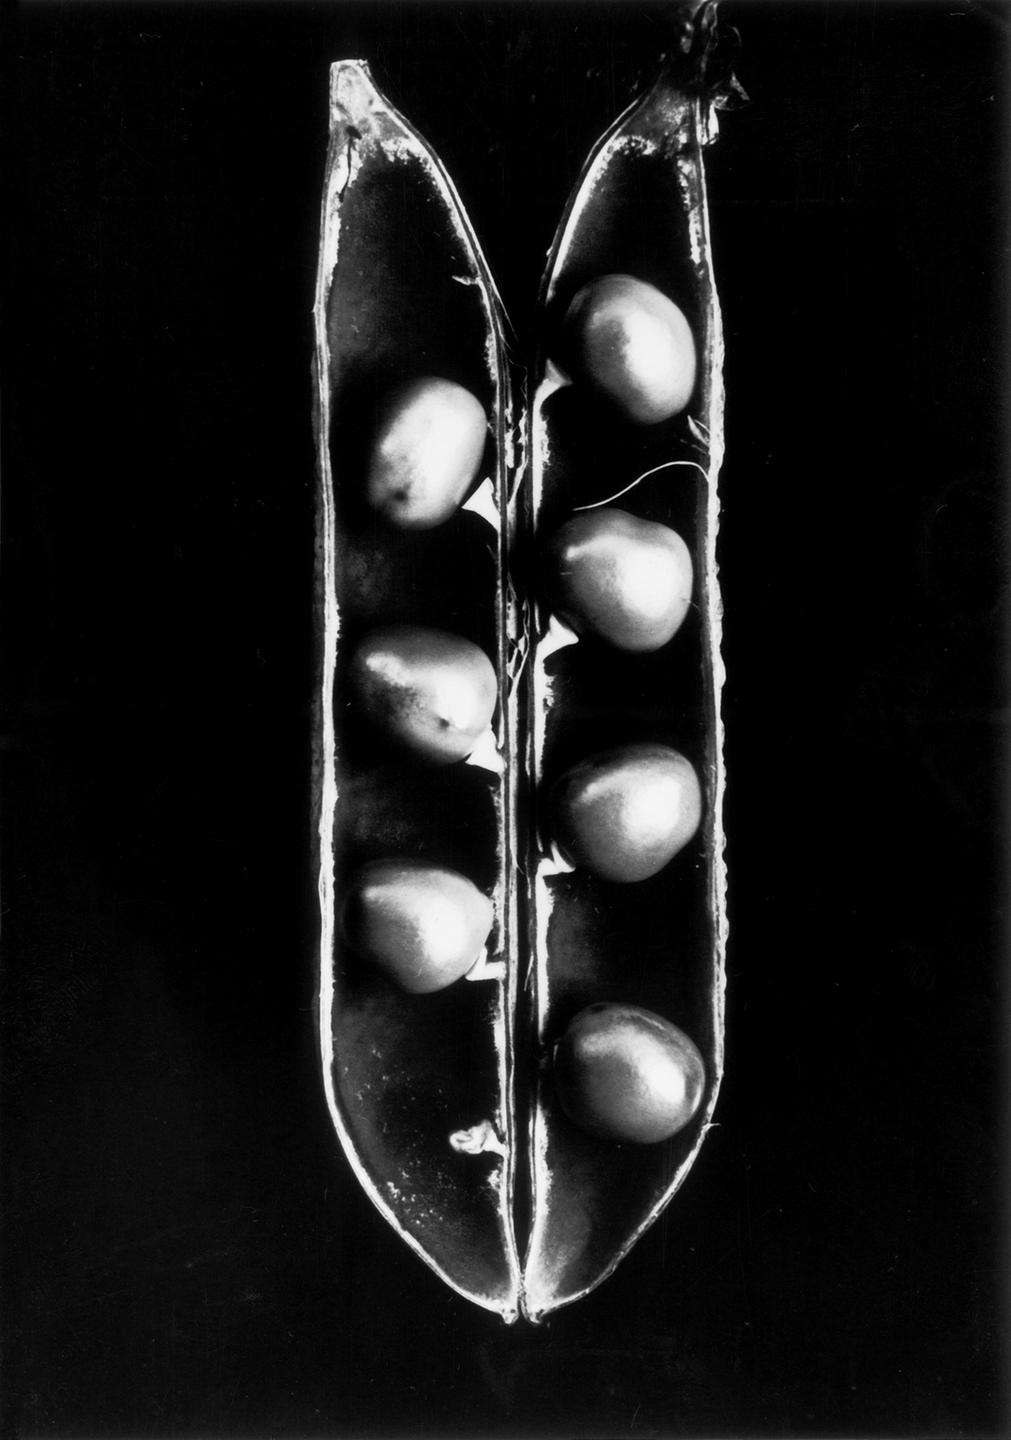 Geöffnete Erbsenschote, senkrecht ins Bild gesetzt, in der aufgeklappten Hülse sind links drei und rechts vier Früchte zu sehen (Schwarz-weiß-Fotografie vor schwarzem Hintergrund).